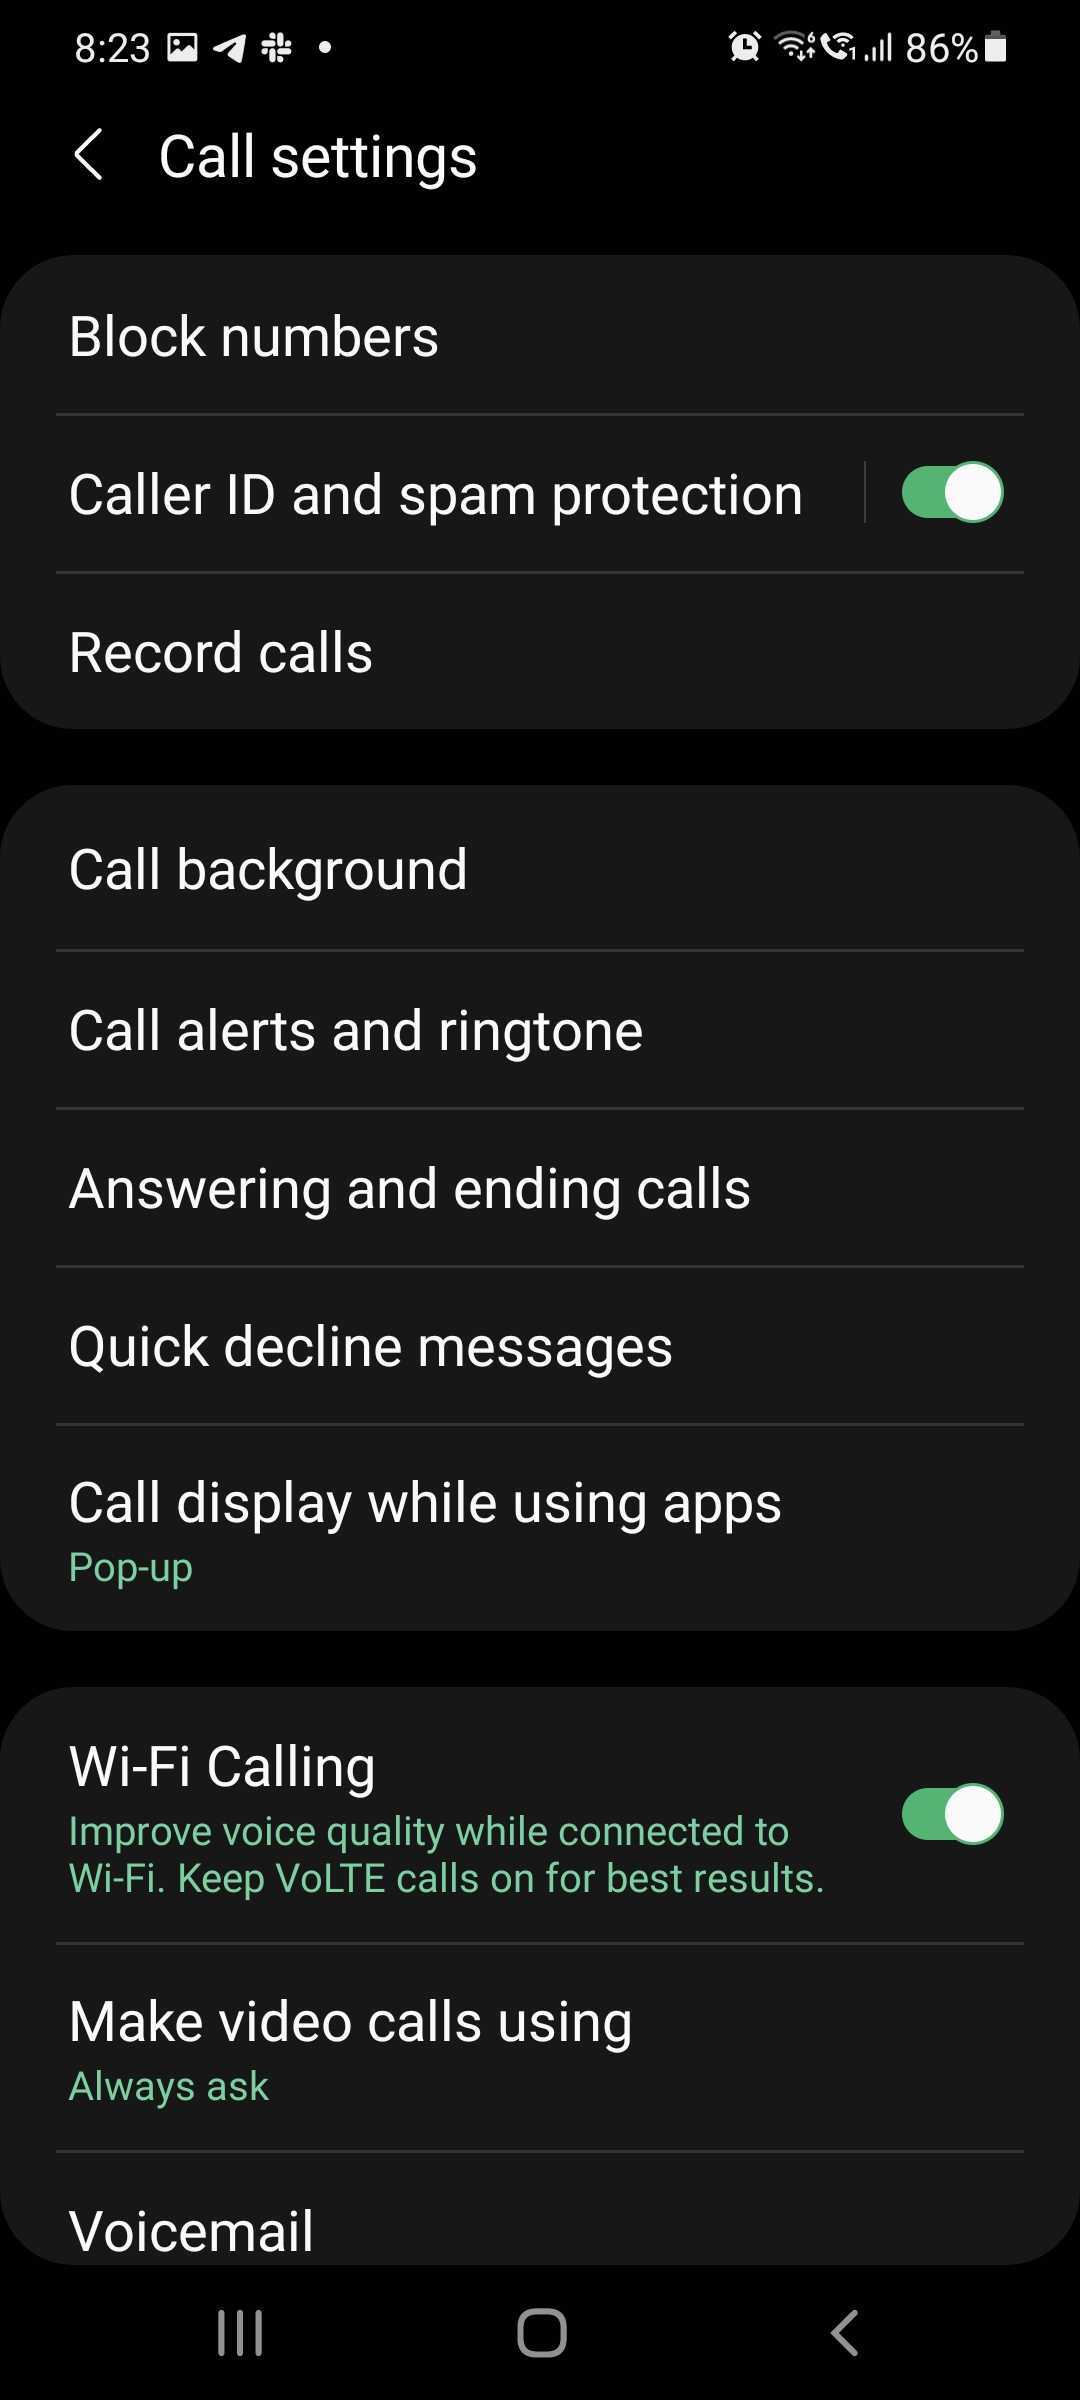 Hãy cùng nghe lại những cuộc gọi đáng nhớ trong cuộc sống của bạn với chức năng ghi âm trên điện thoại Samsung Galaxy. Hình ảnh liên quan đến sản phẩm này sẽ giúp bạn dễ dàng tìm hiểu và trải nghiệm tính năng vô cùng hữu ích này. 